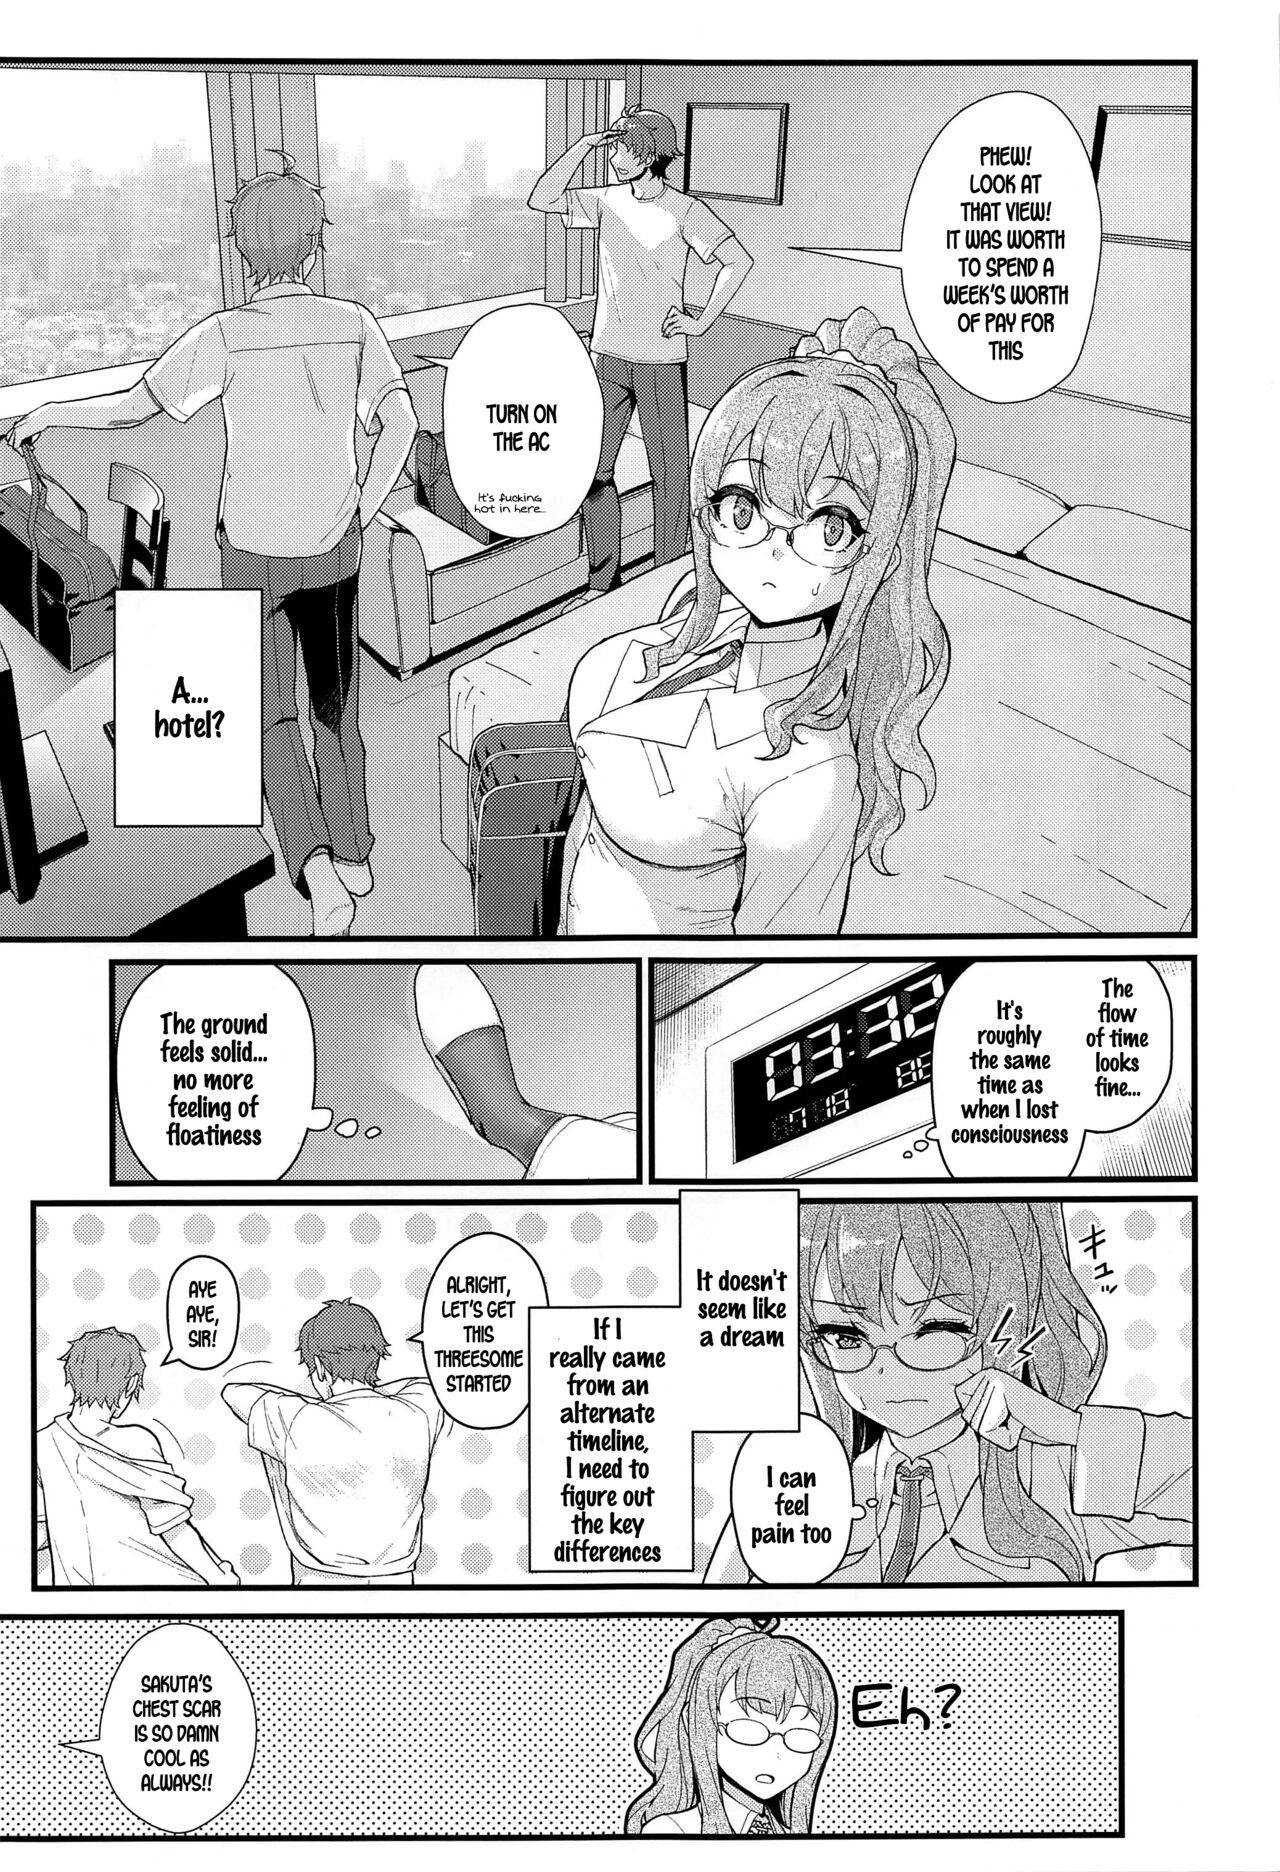 Oil MULTI REALITY - Seishun buta yarou wa bunny girl senpai no yume o minai Juggs - Page 8